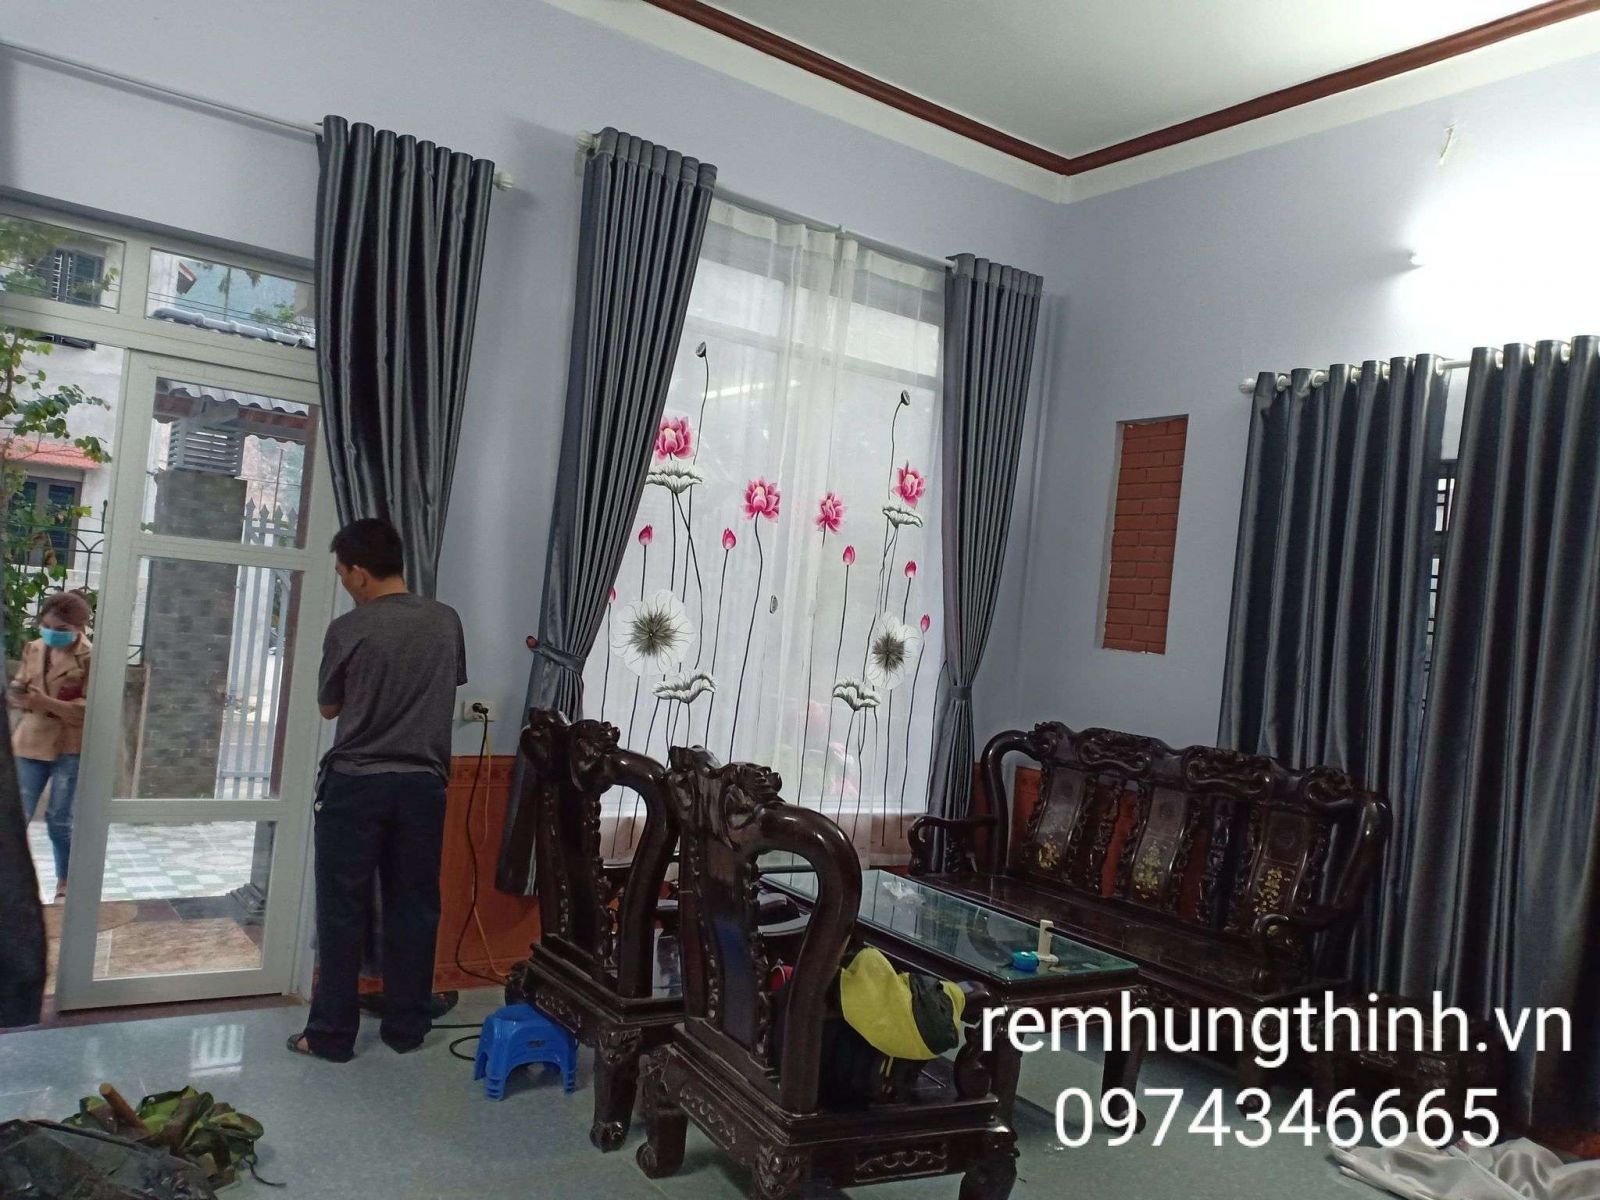 Địa chỉ mua rèm vải voan thêu tay tại quận Cầu giấy – Hà Nội